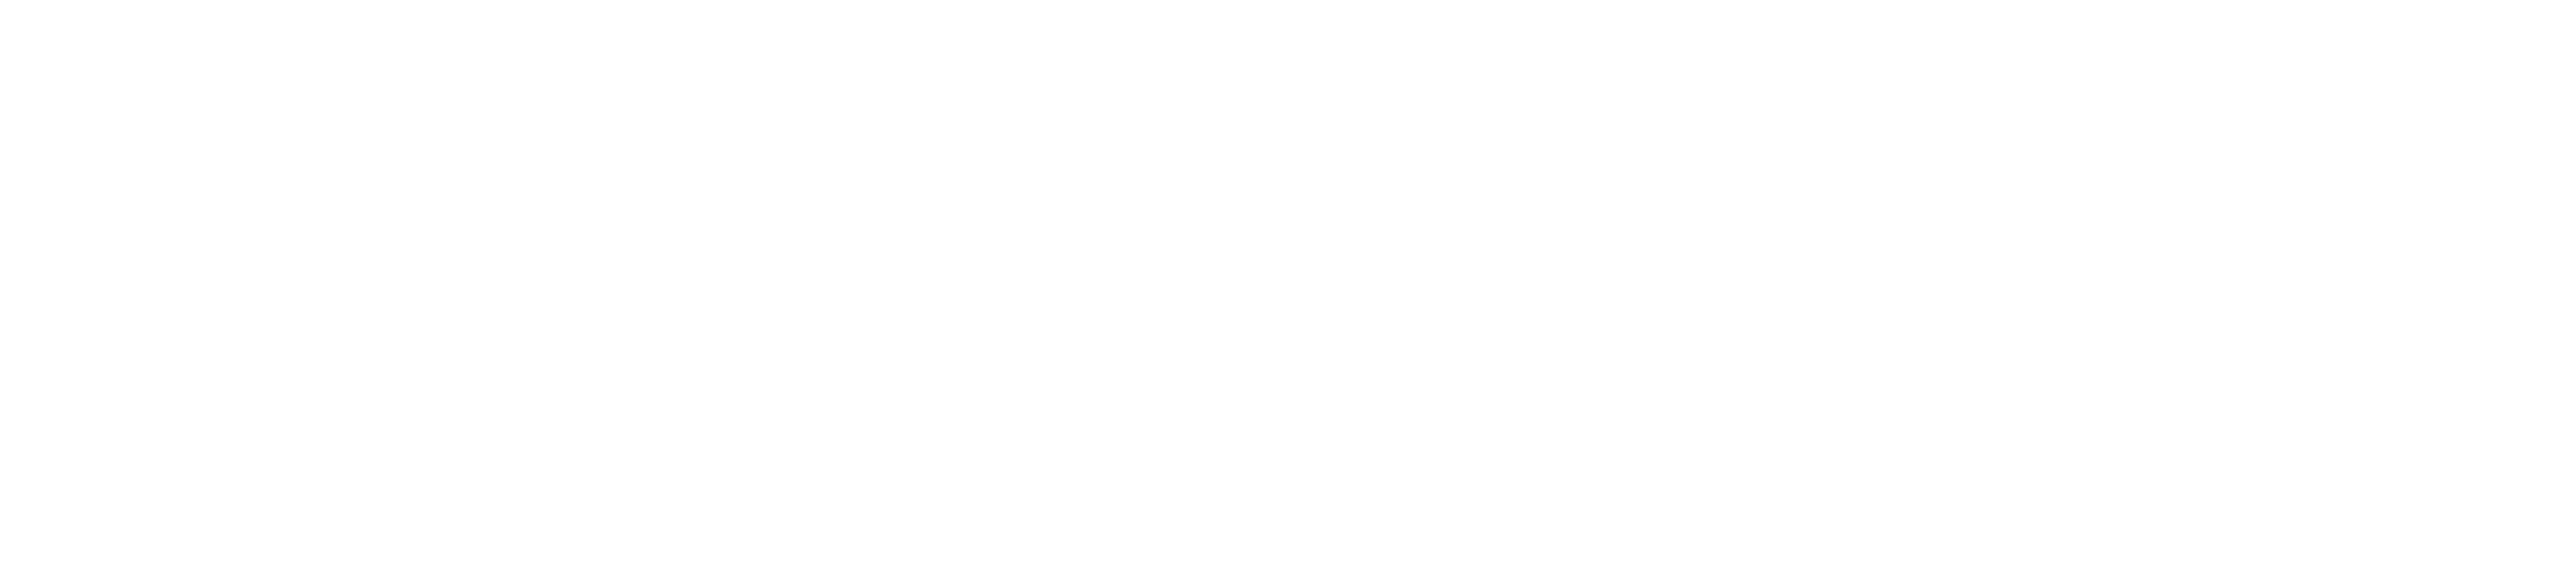 Vercel logotype light